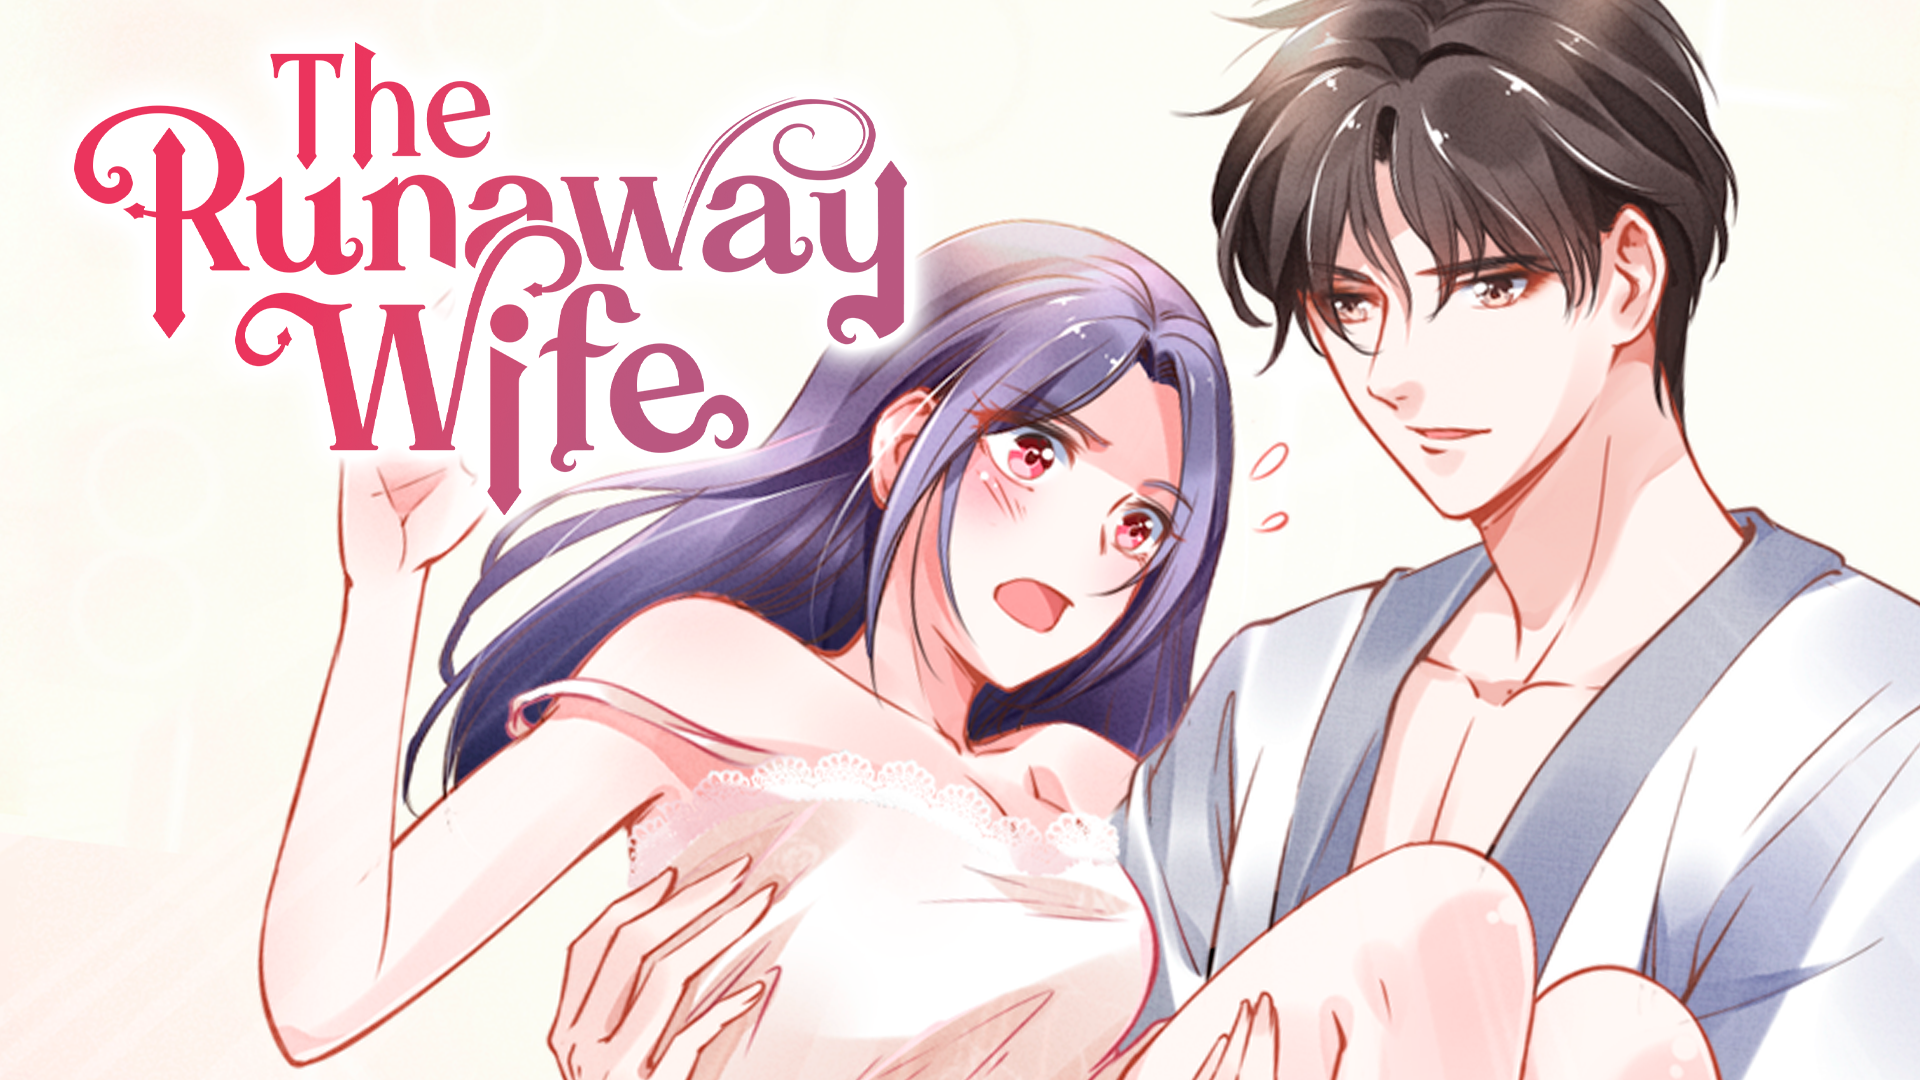 The runaway family manga